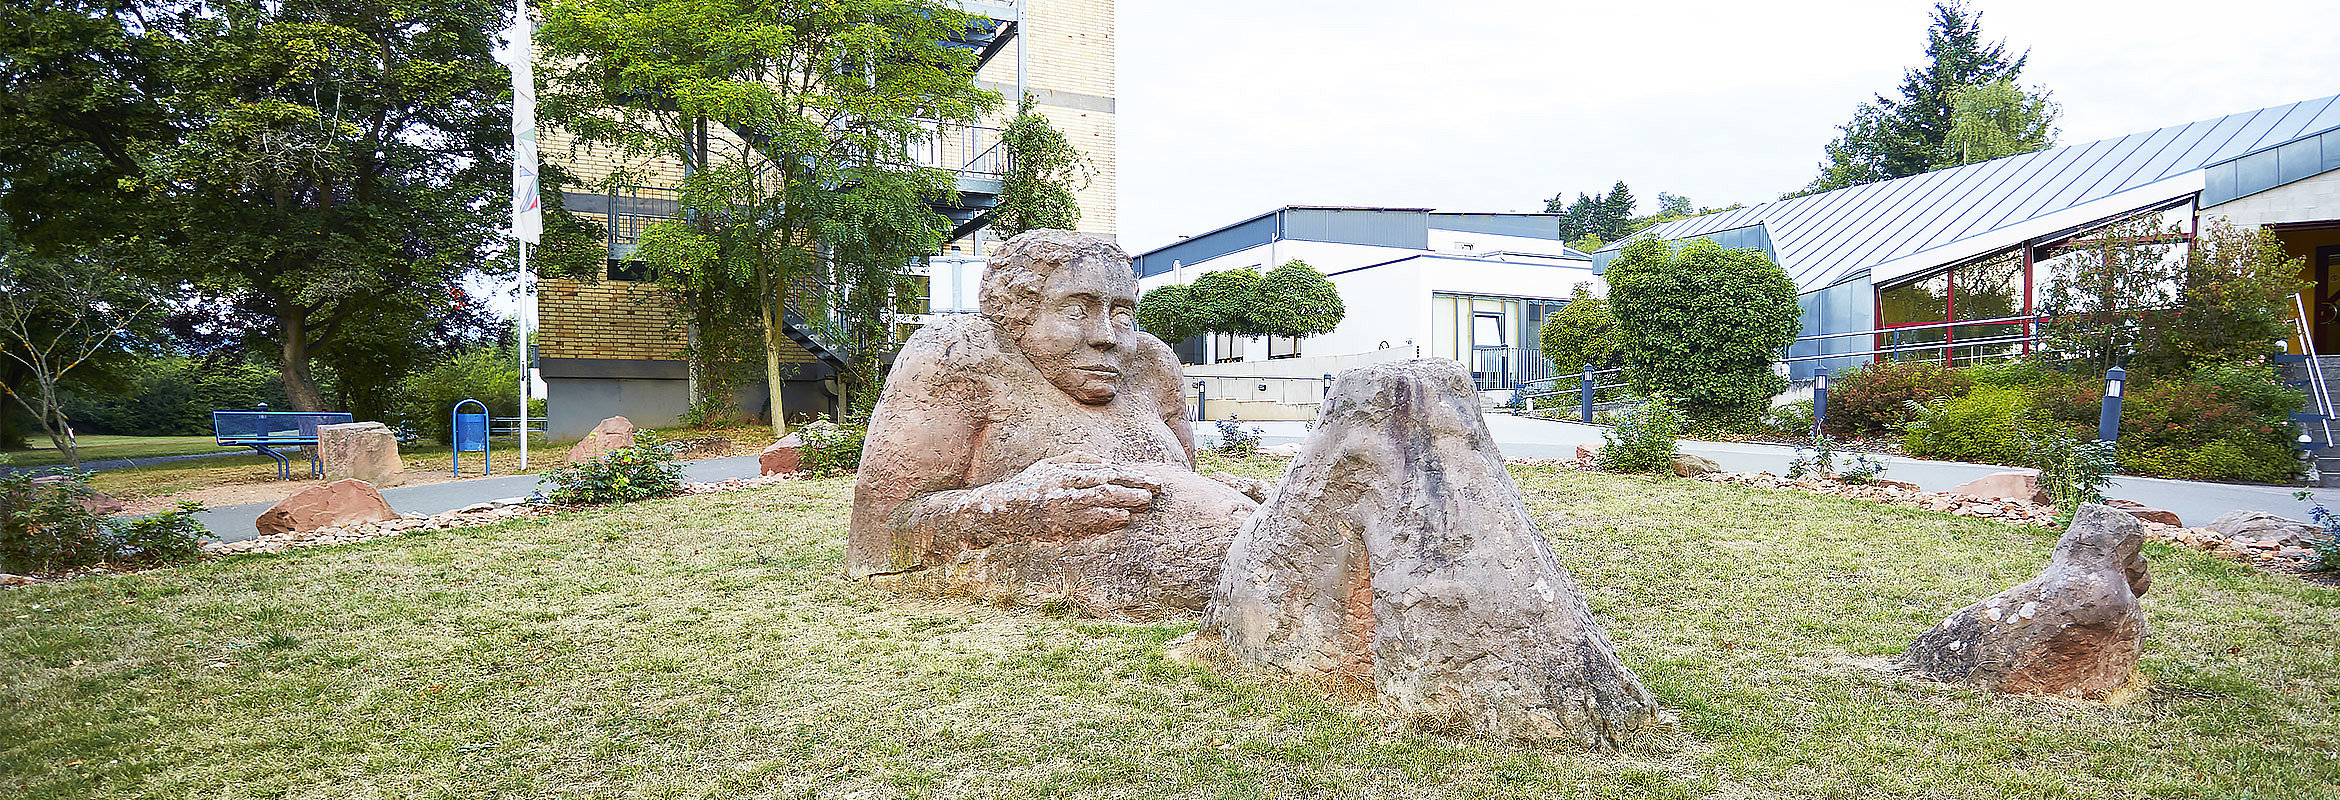 Skulptur auf dem Gelände des Westpfalz-Klinikums Kirchheimbolanden